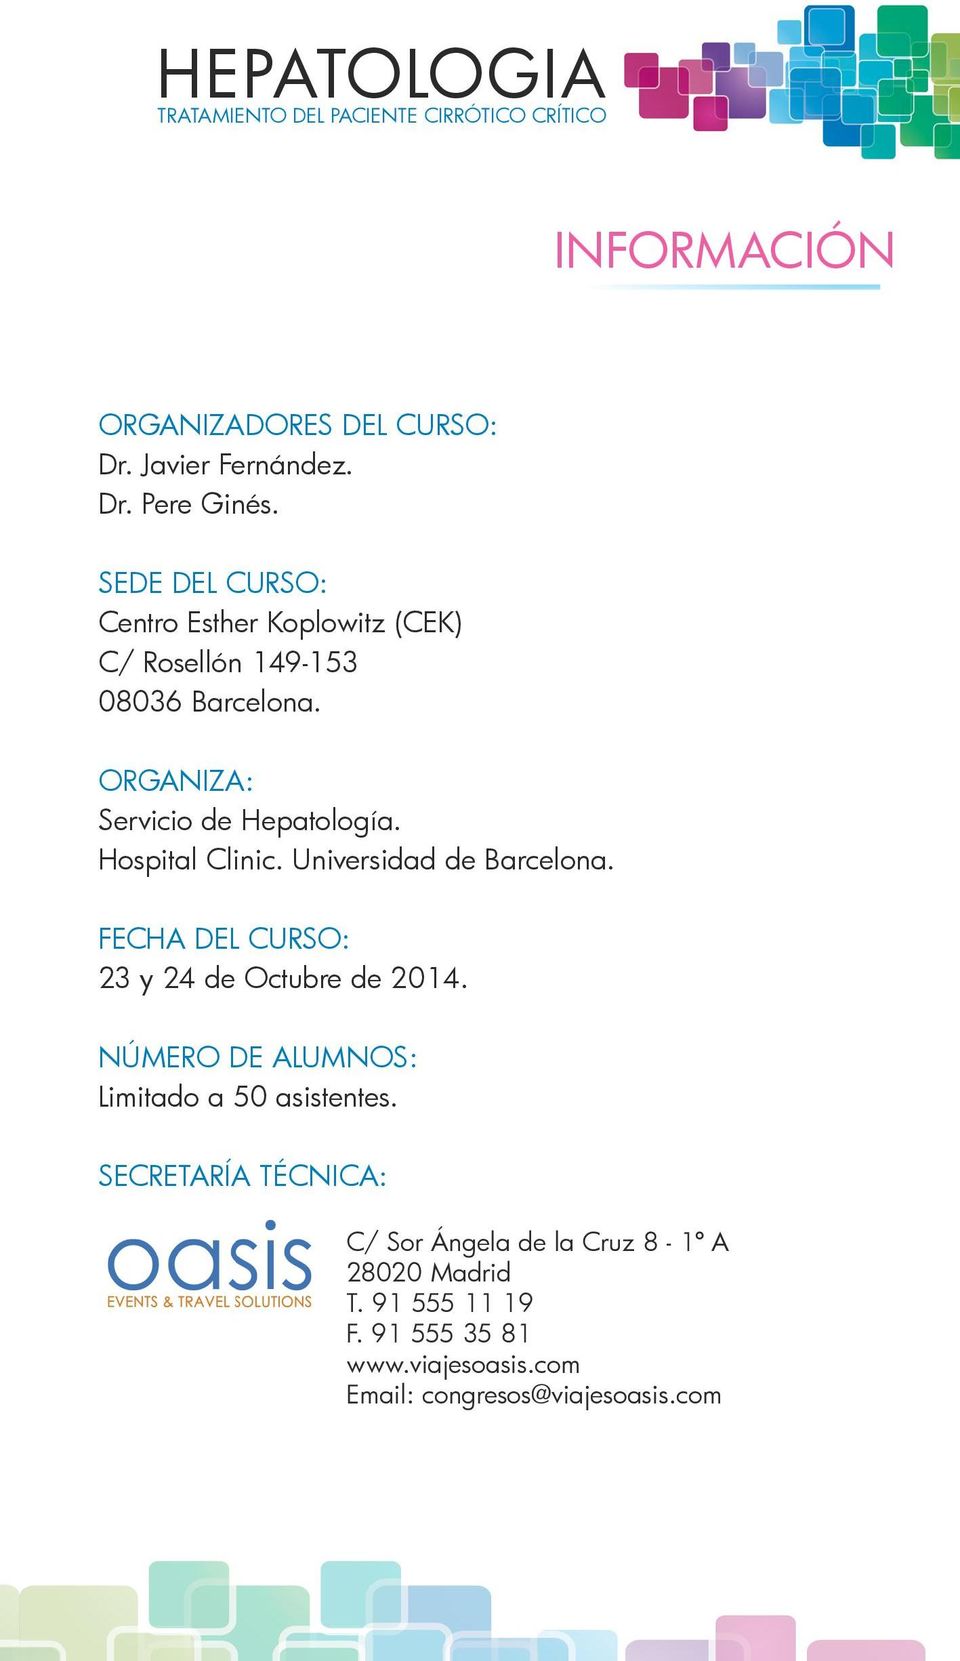 Hospital Clinic. Universidad de Barcelona. Fecha del Curso: 23 y 24 de Octubre de 2014.